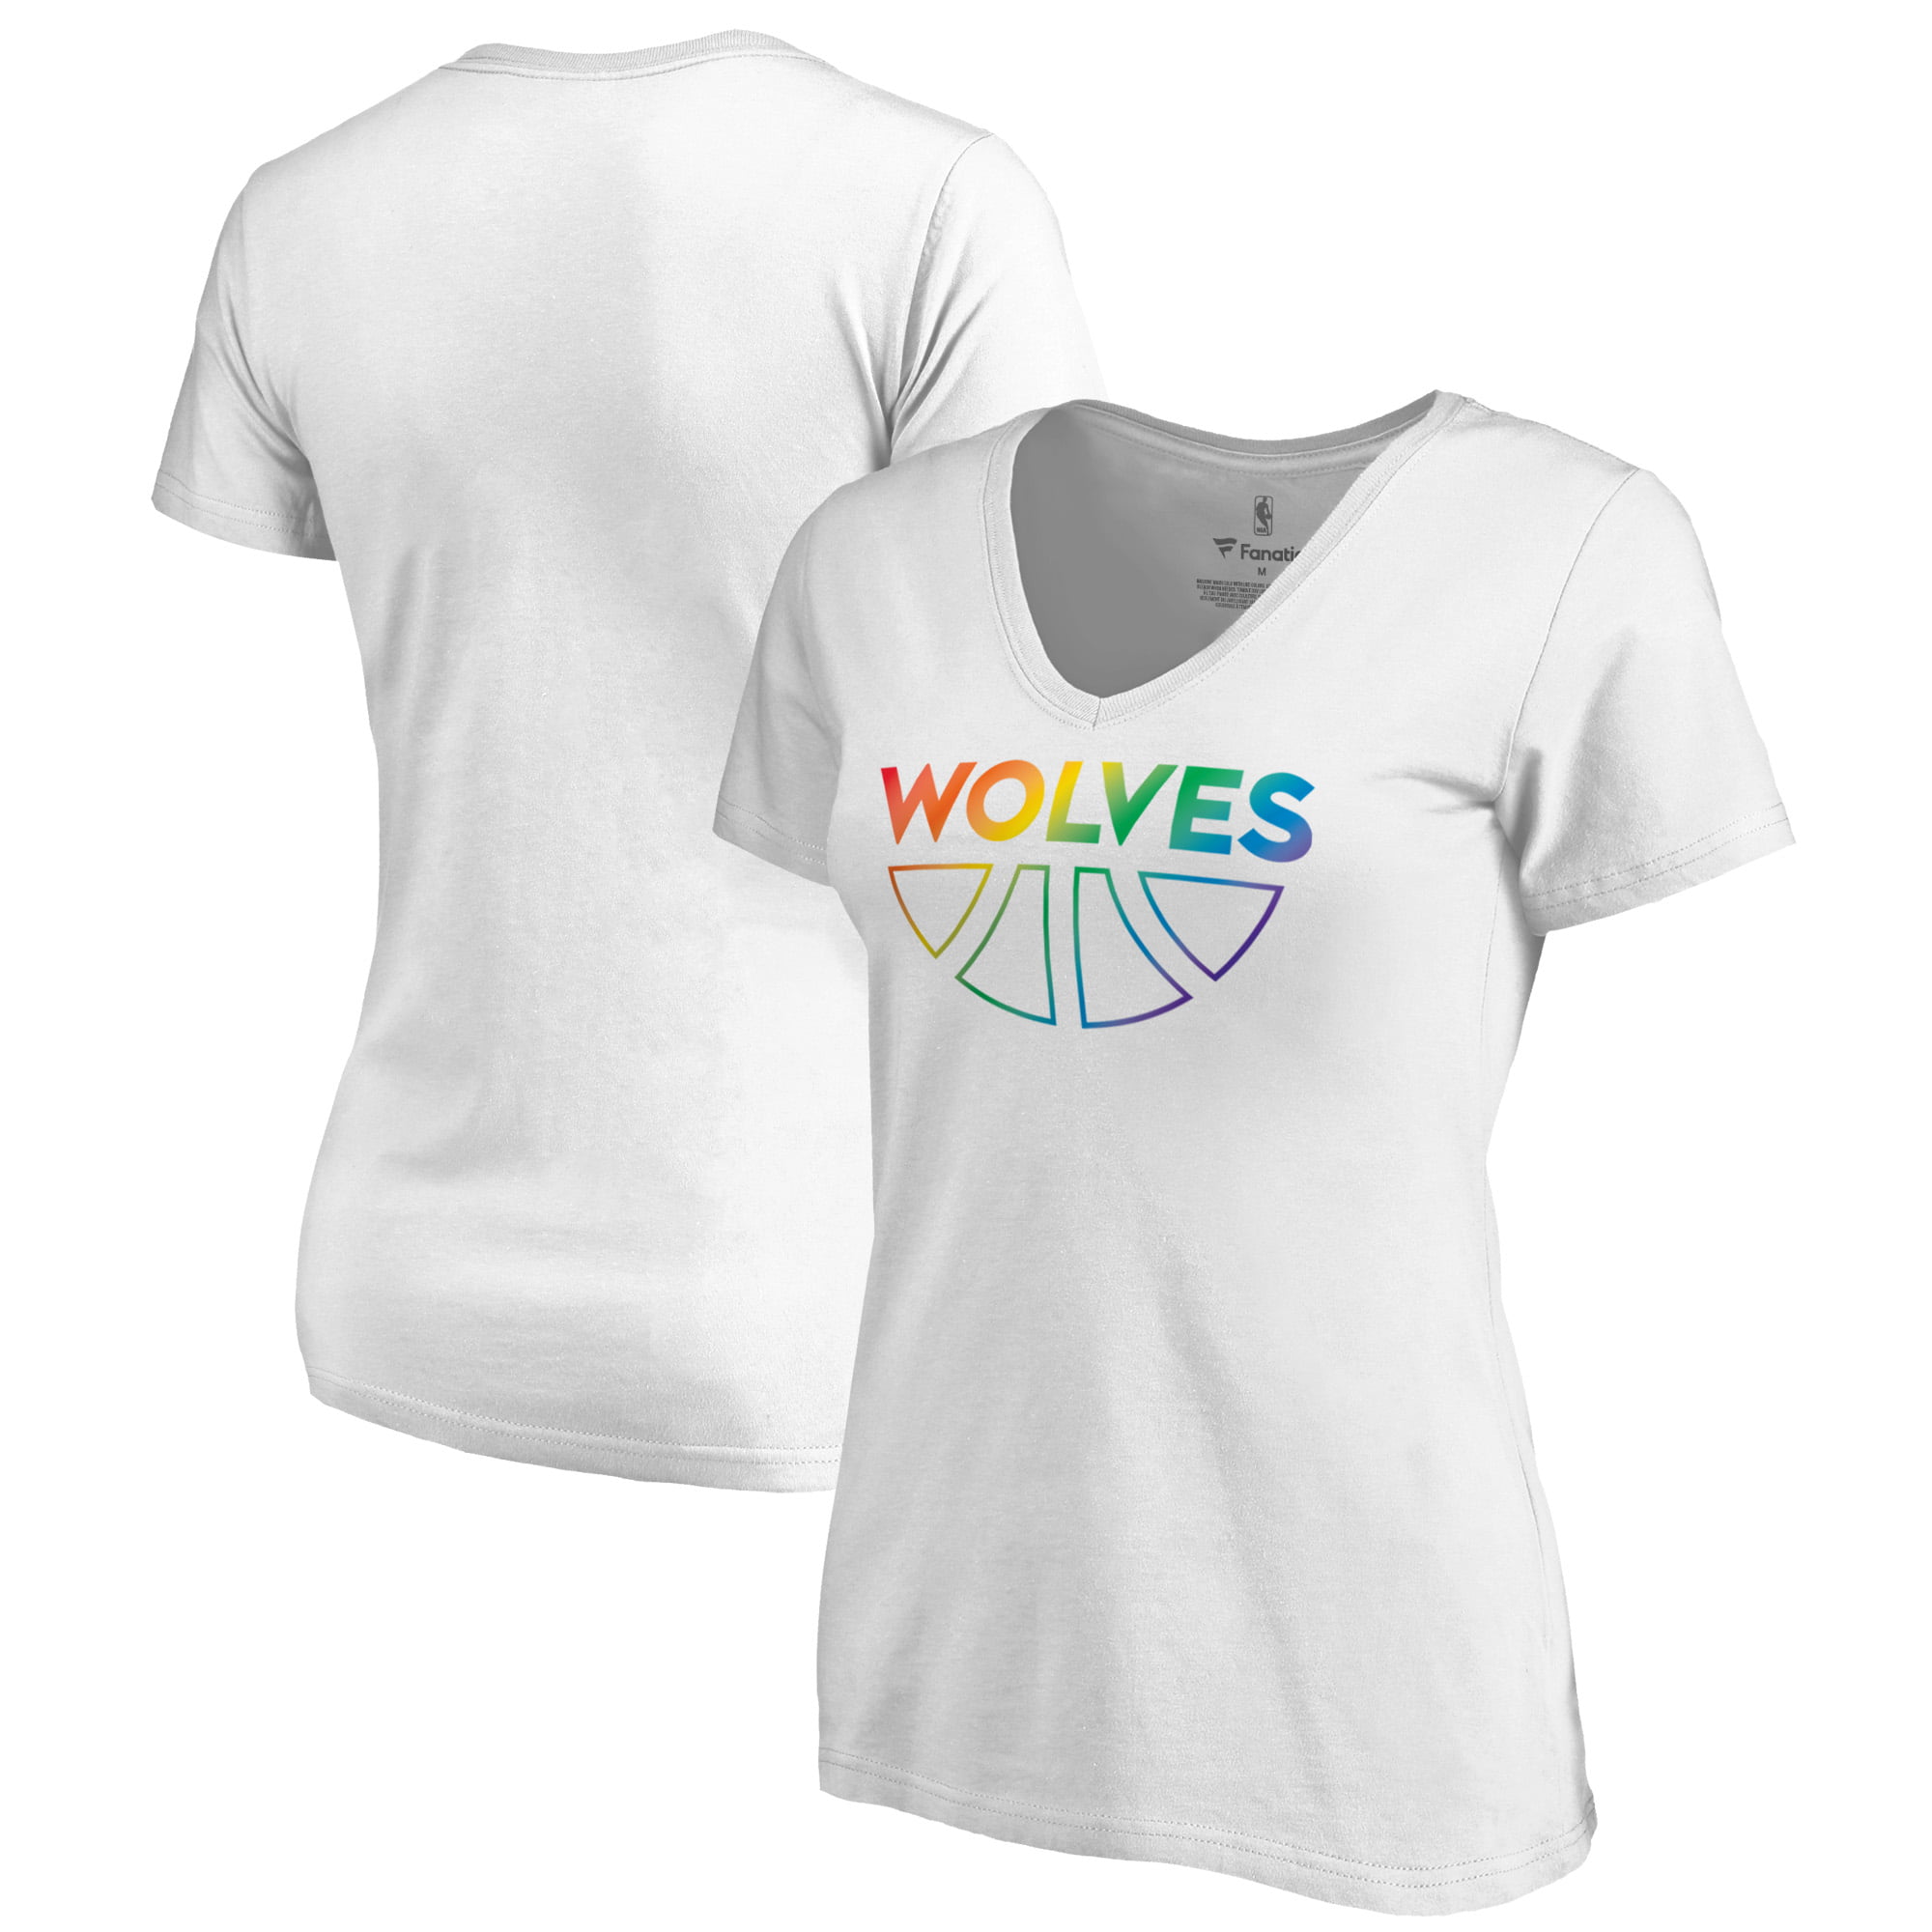 timberwolves pride jersey